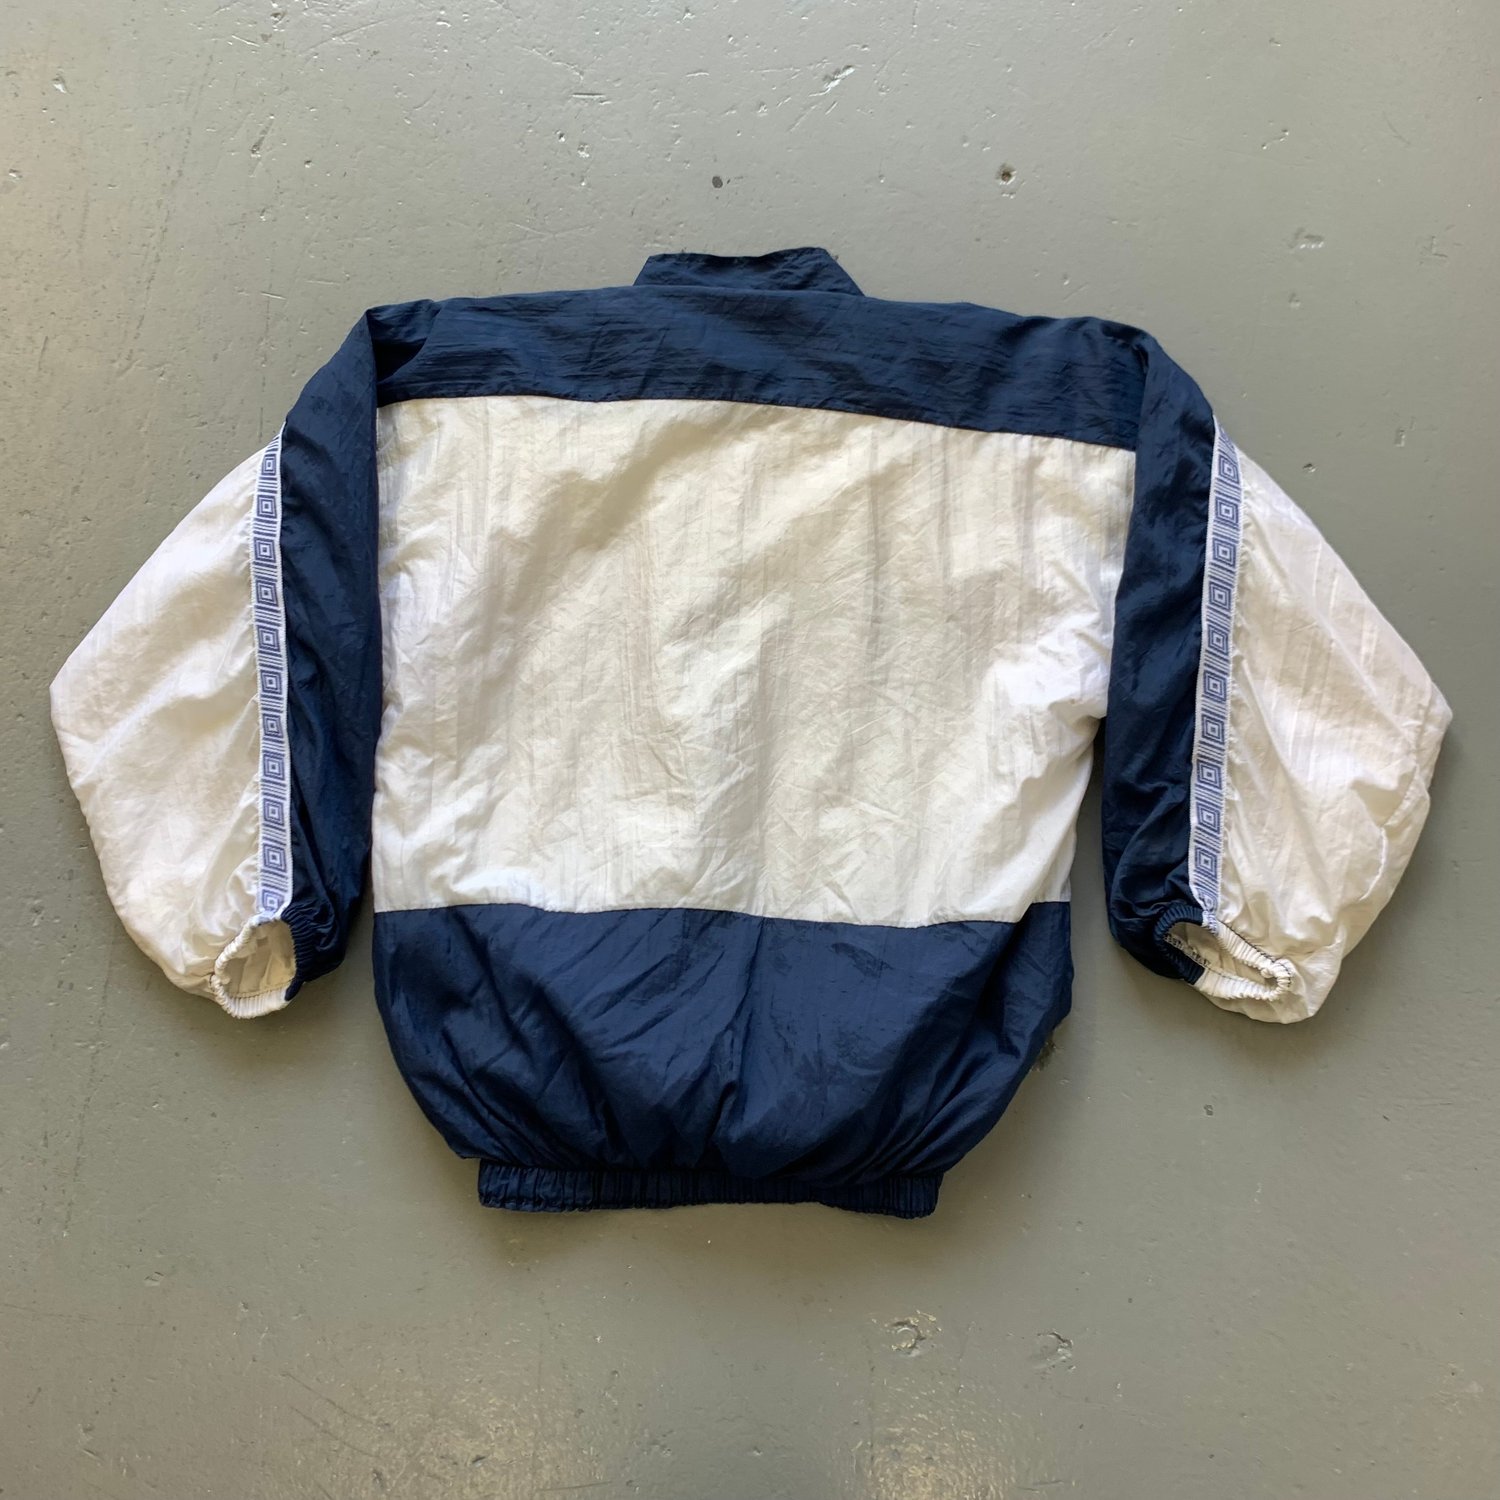 Image of Vintage England shell jacket size medium 